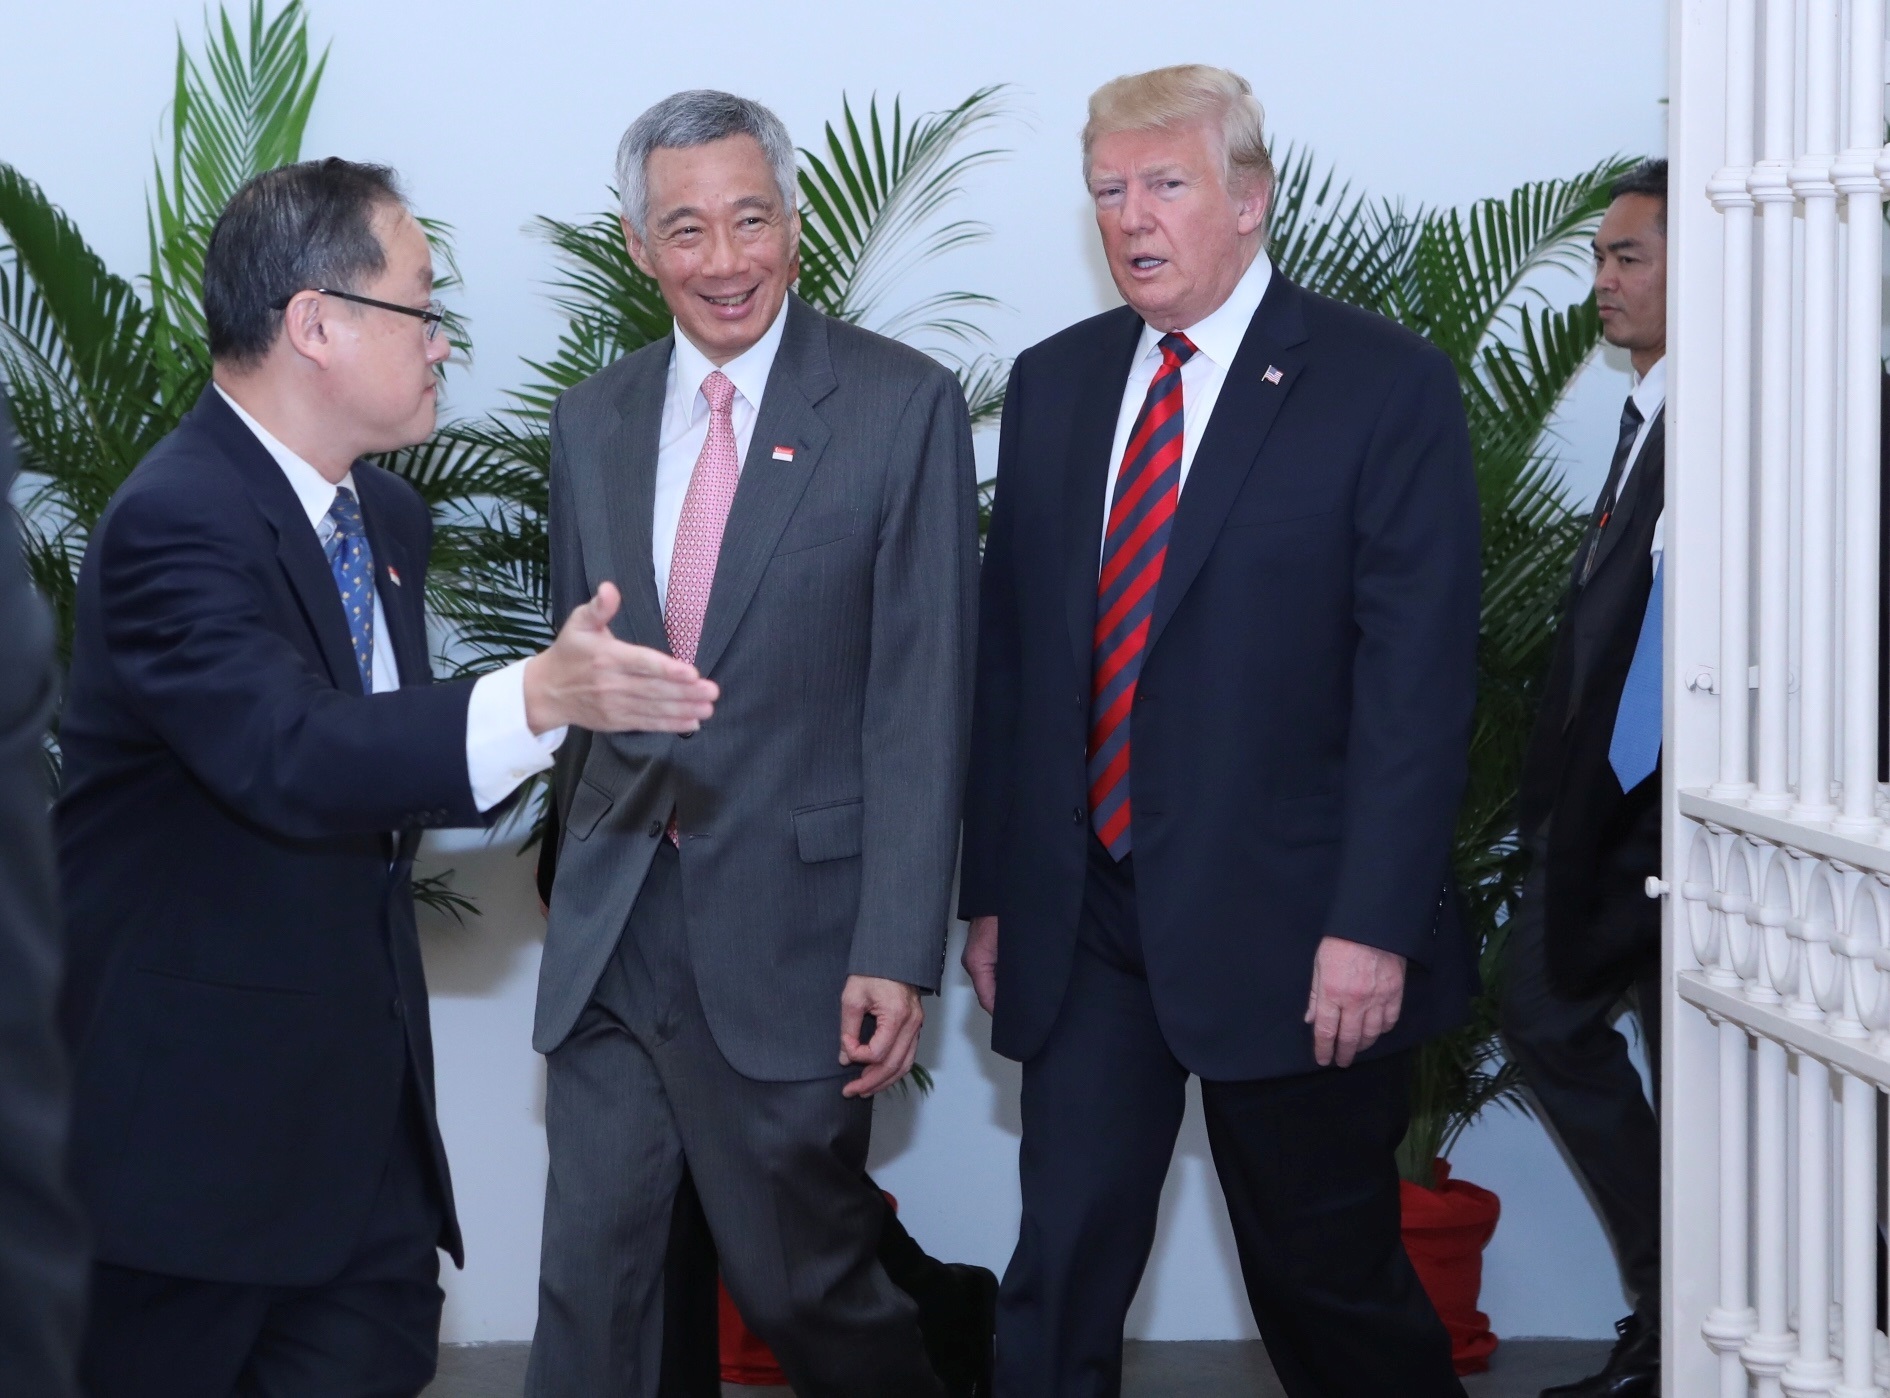 الرئيس الأمريكى ورئيس وزراء سنغافورة يدخلان سويا لبدء محادثتهما